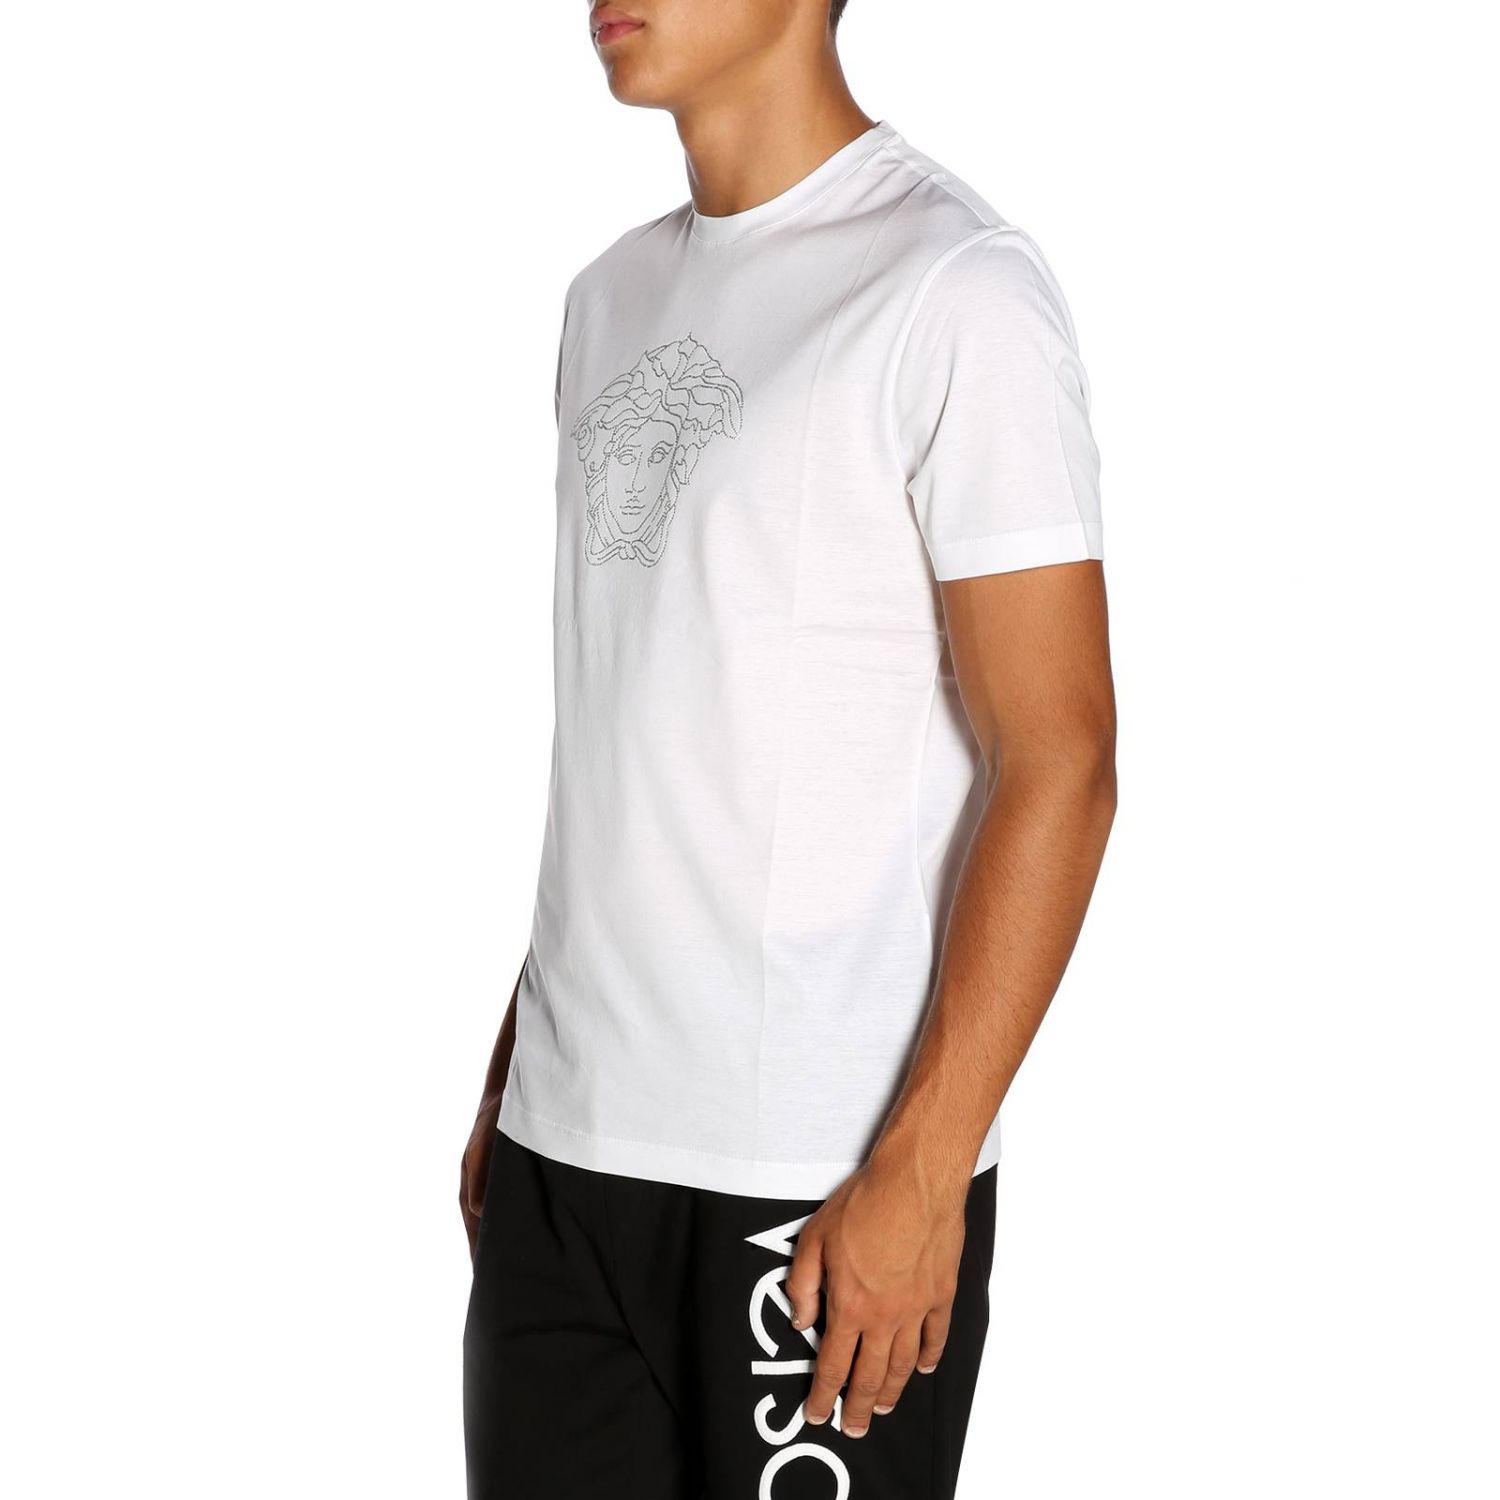 Versace Outlet: T-shirt men | T-Shirt Versace Men White | T-Shirt ...